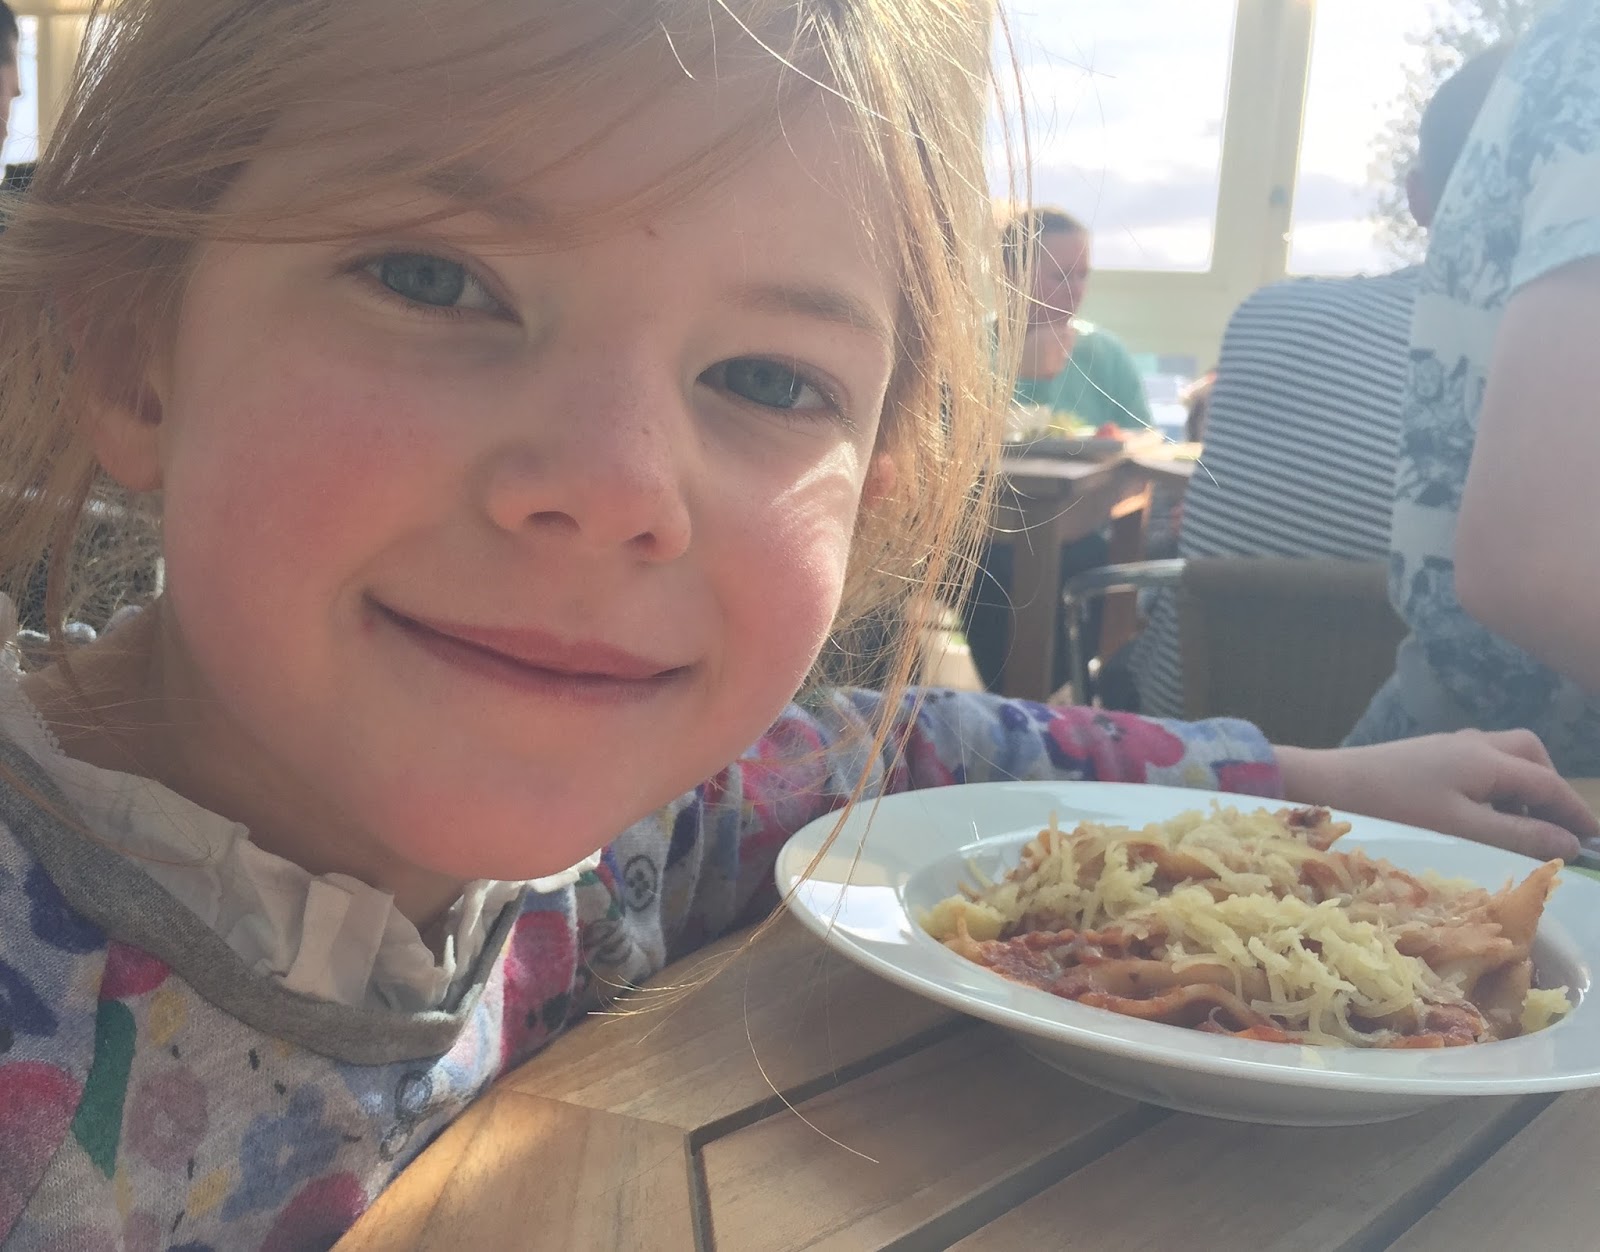 Fish & Chips Friday at Black Horse, Beamish - kids' pasta